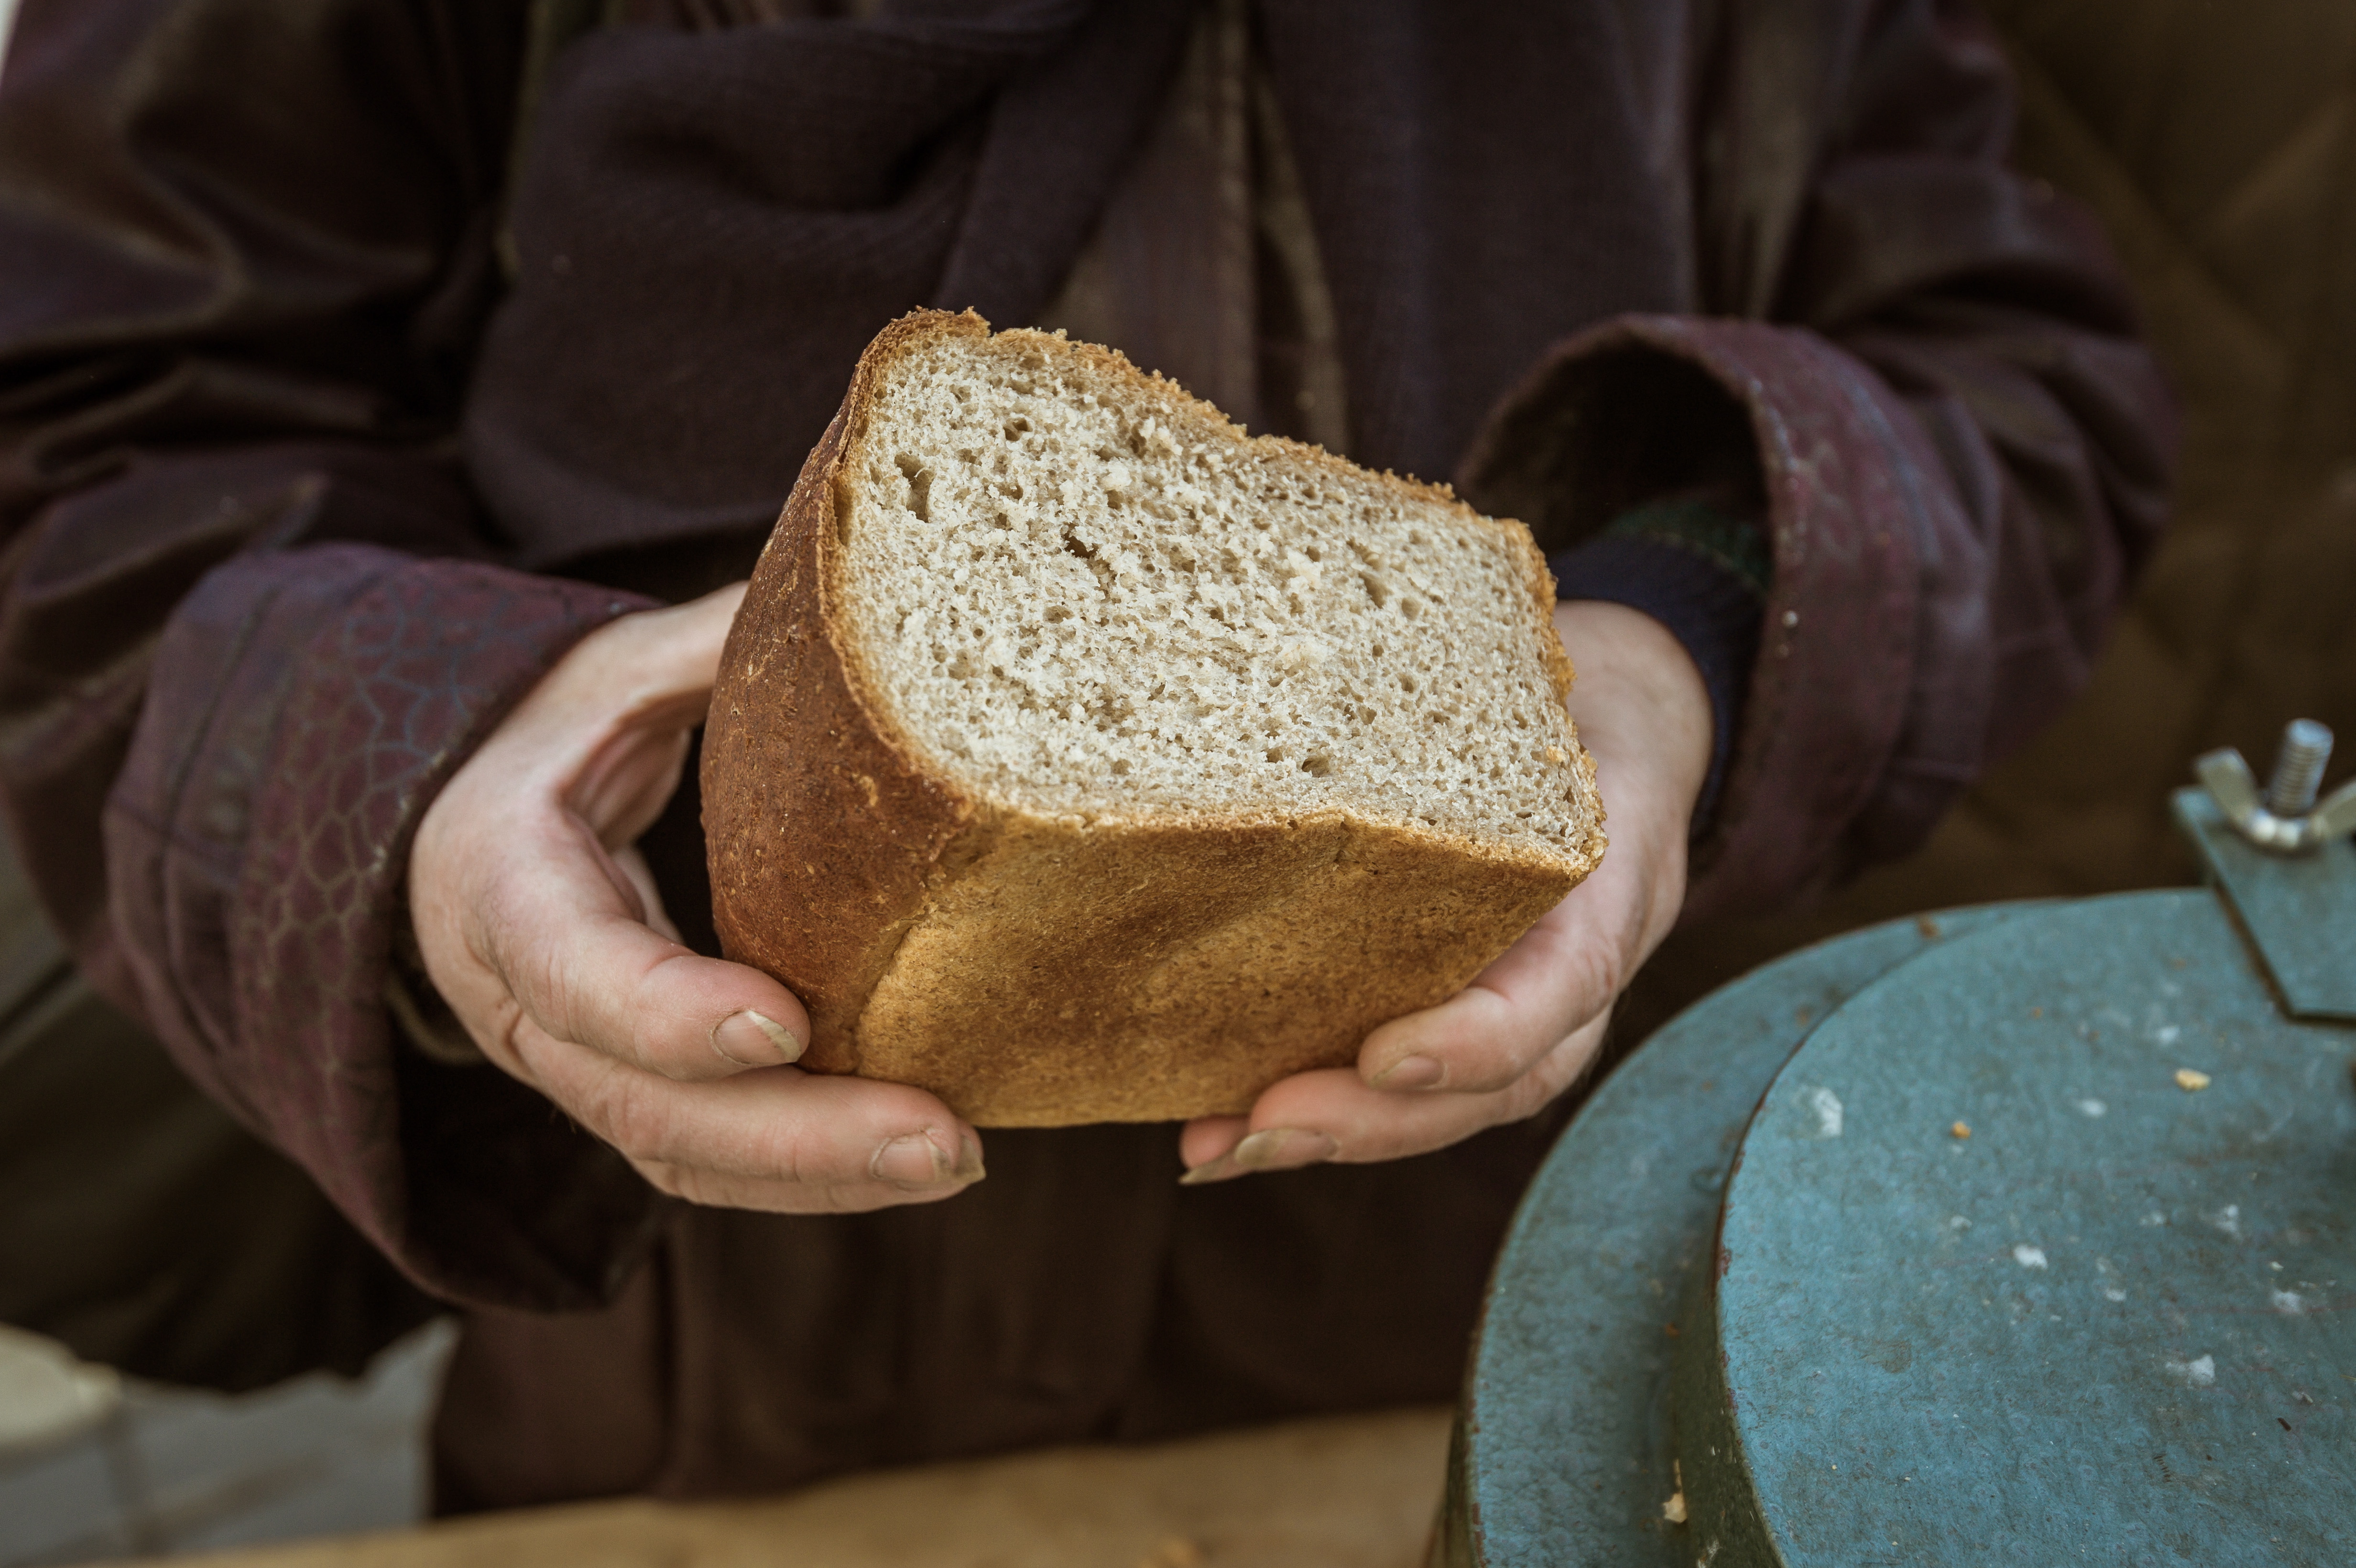 Хлеб земли человек